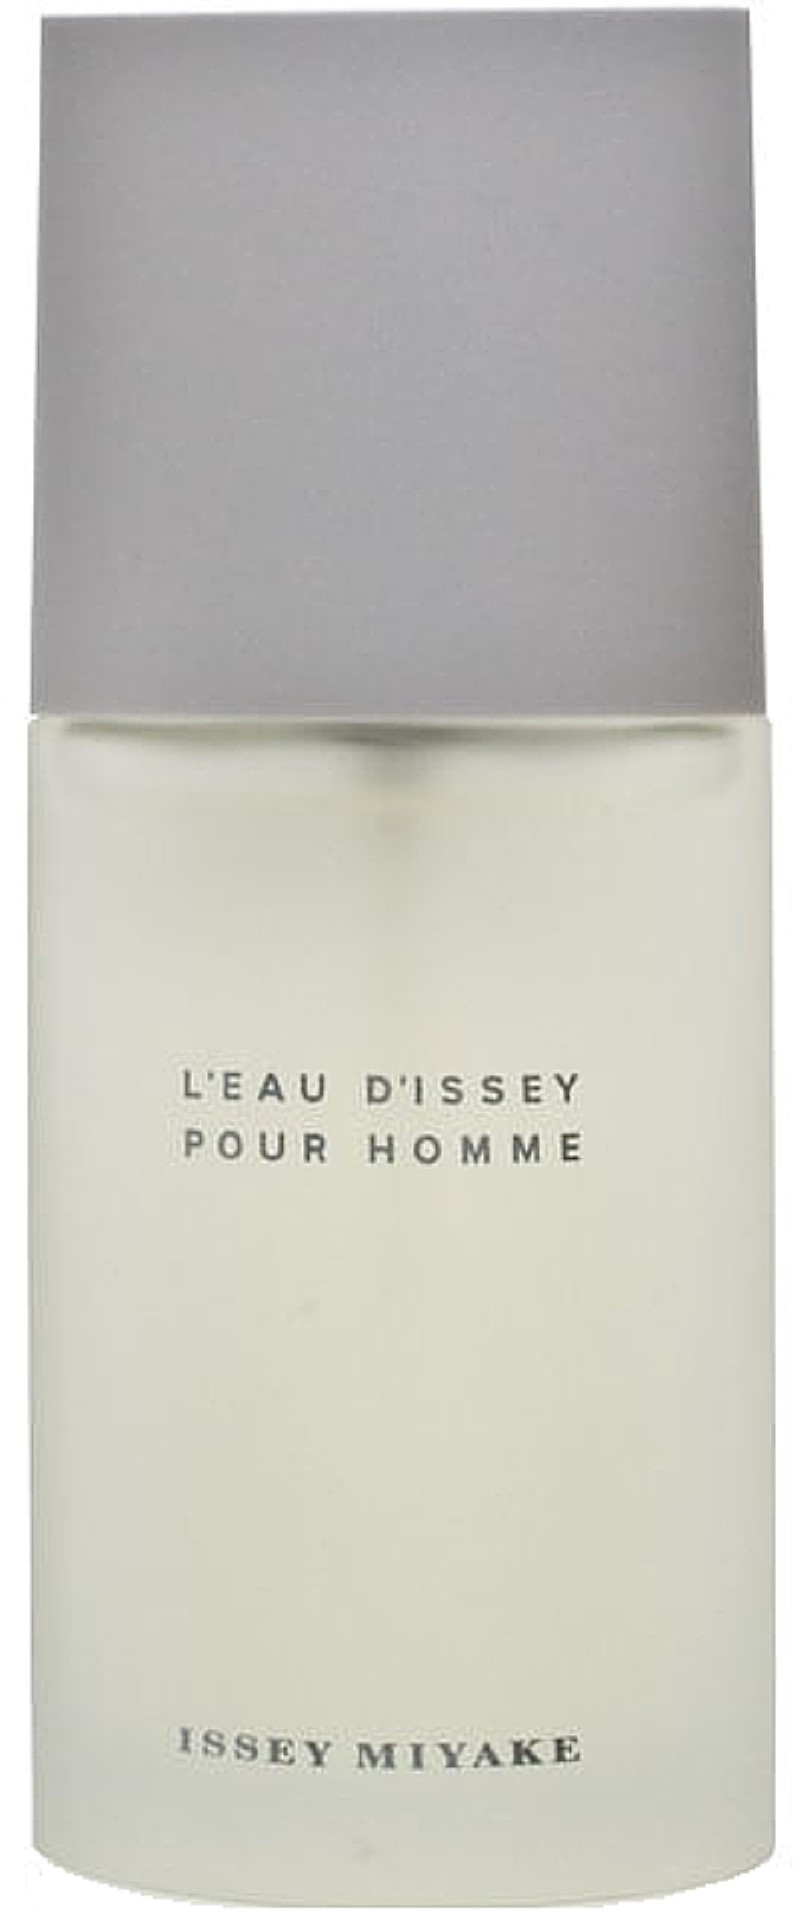 L'eau D'issey Pour Homme Eau de Toilette Spray 1.30 oz - image 1 of 2